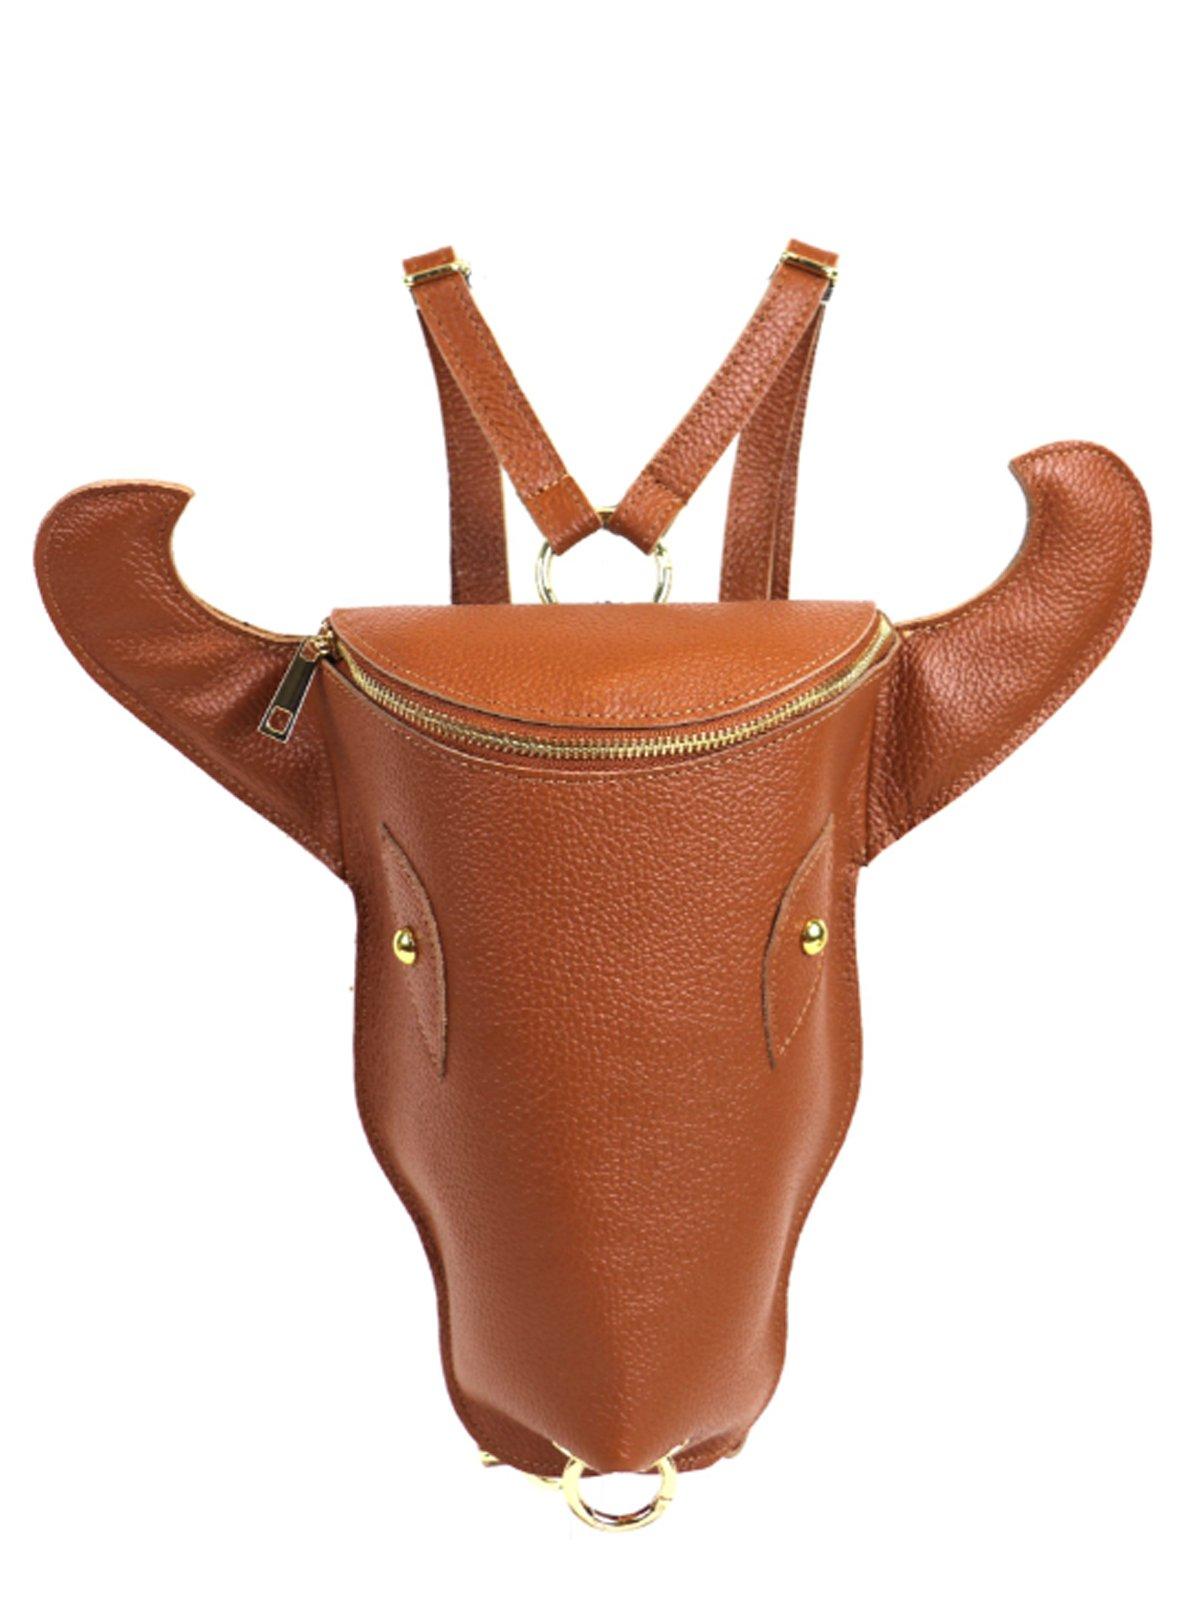 Рюкзак из кожи коровьей головы цвета Camel Sostter, коричневый рюкзак женский школьный из коровьей кожи